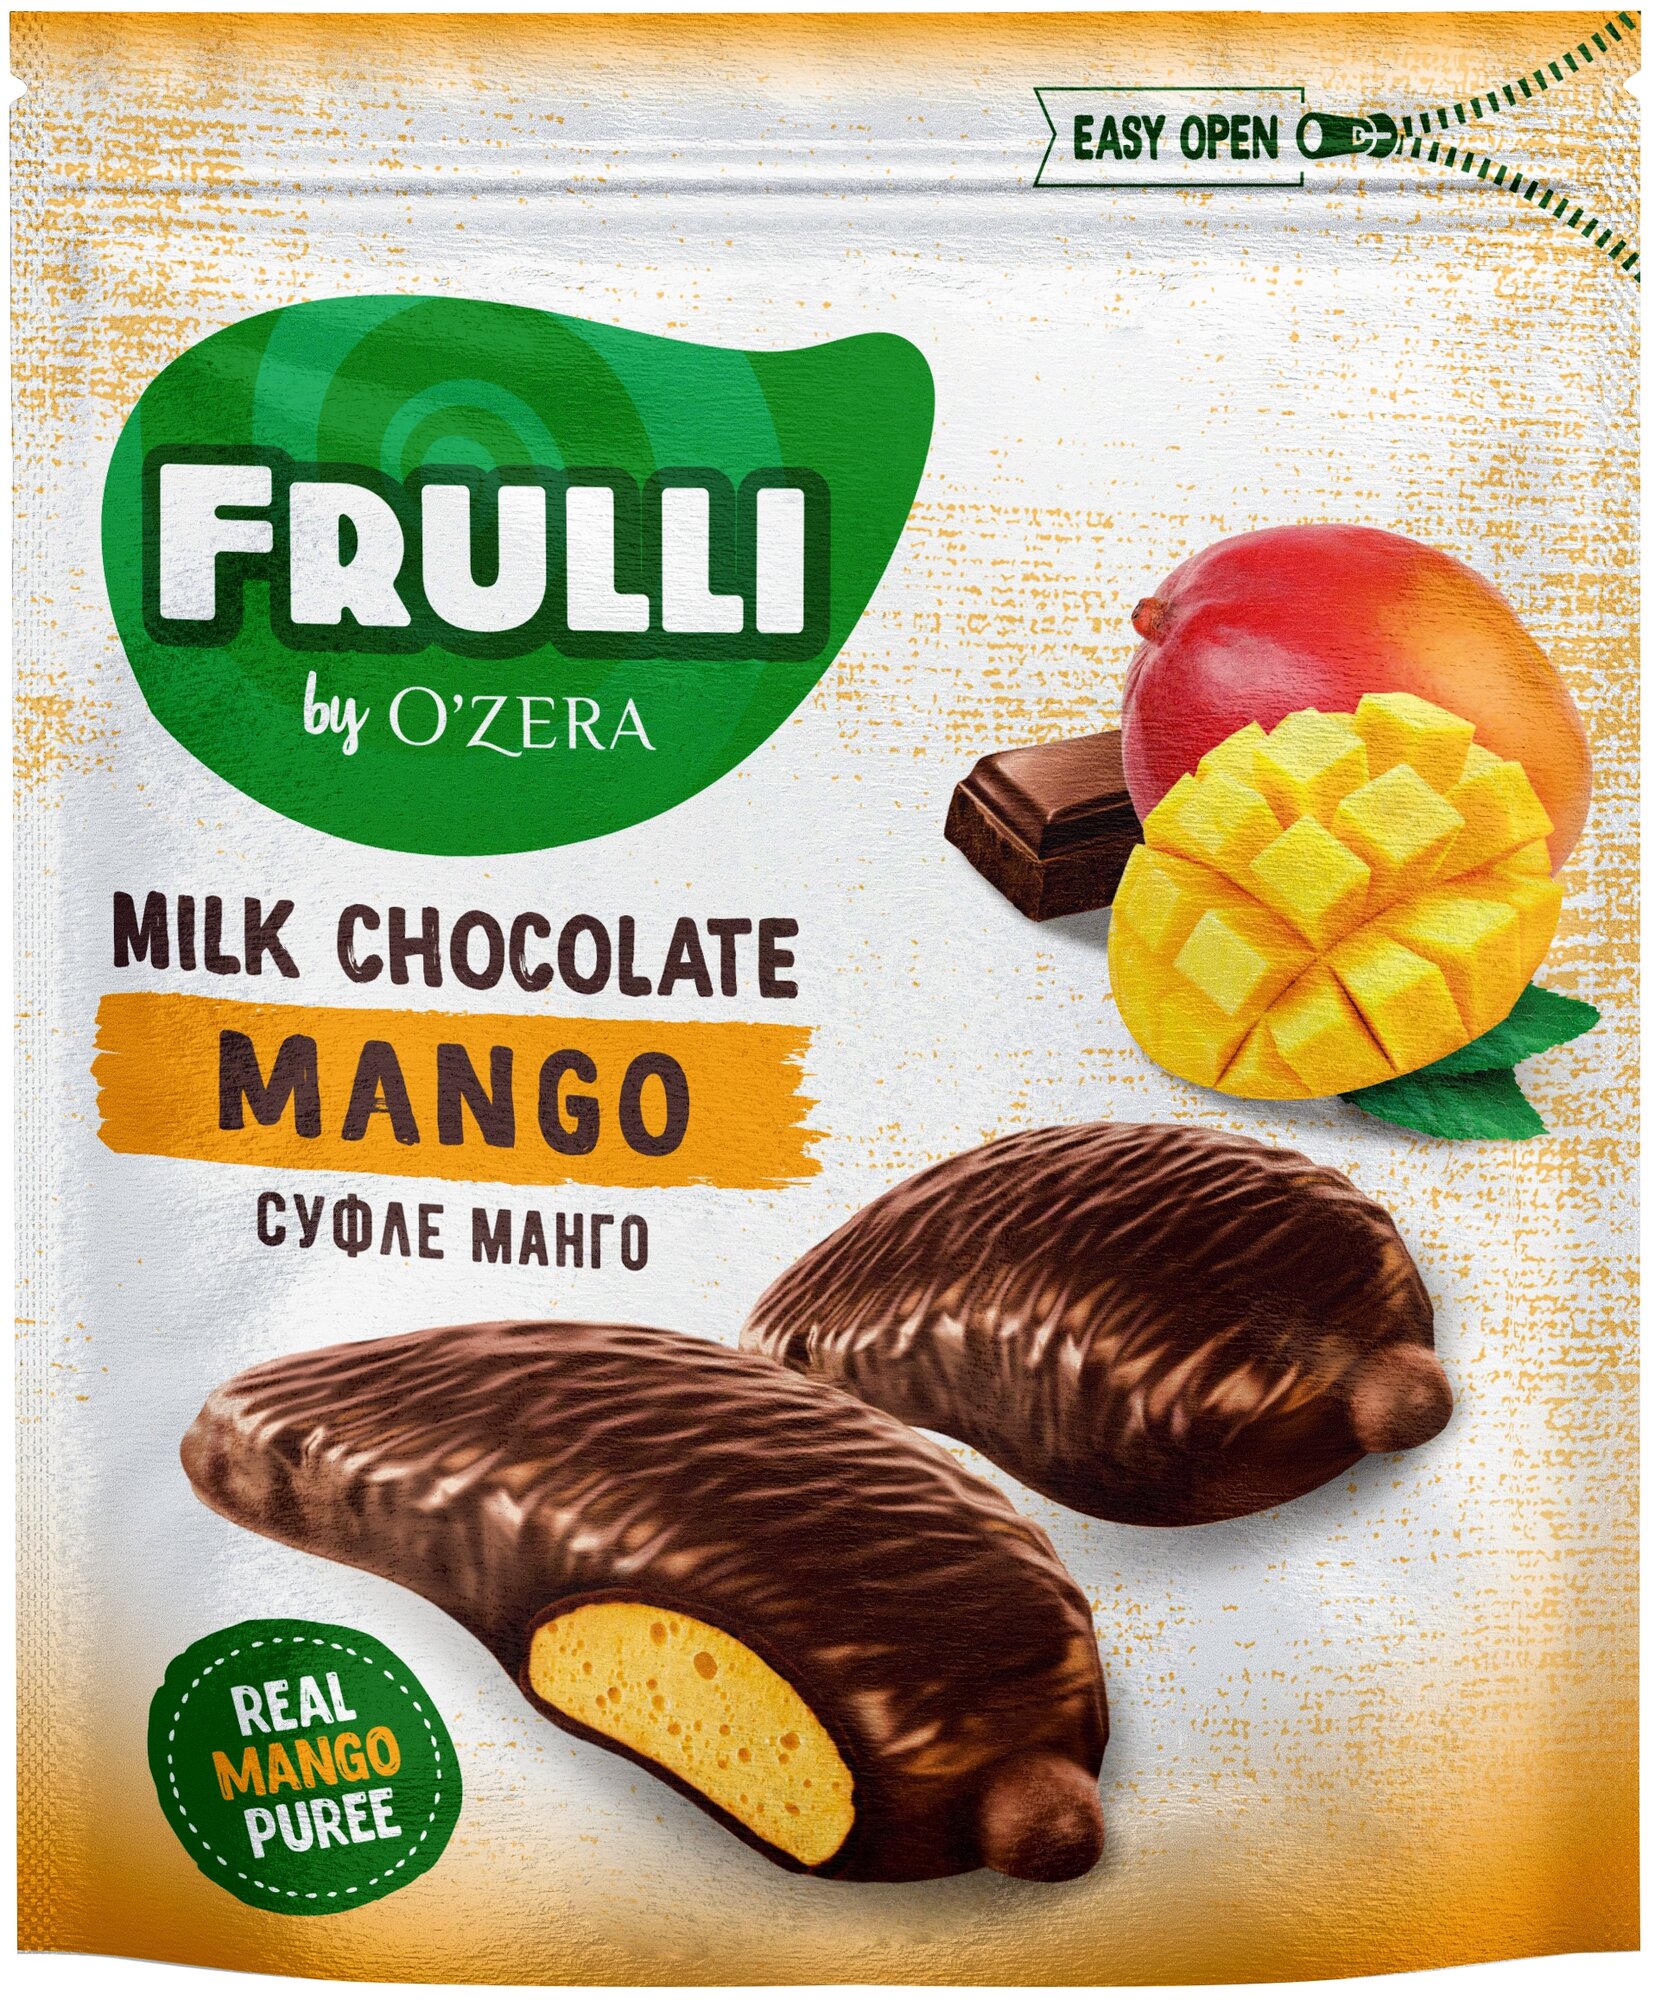 Конфеты шоколадные O'ZERA "Frulli" с суфле манго, 125 г, пакет, КРН217